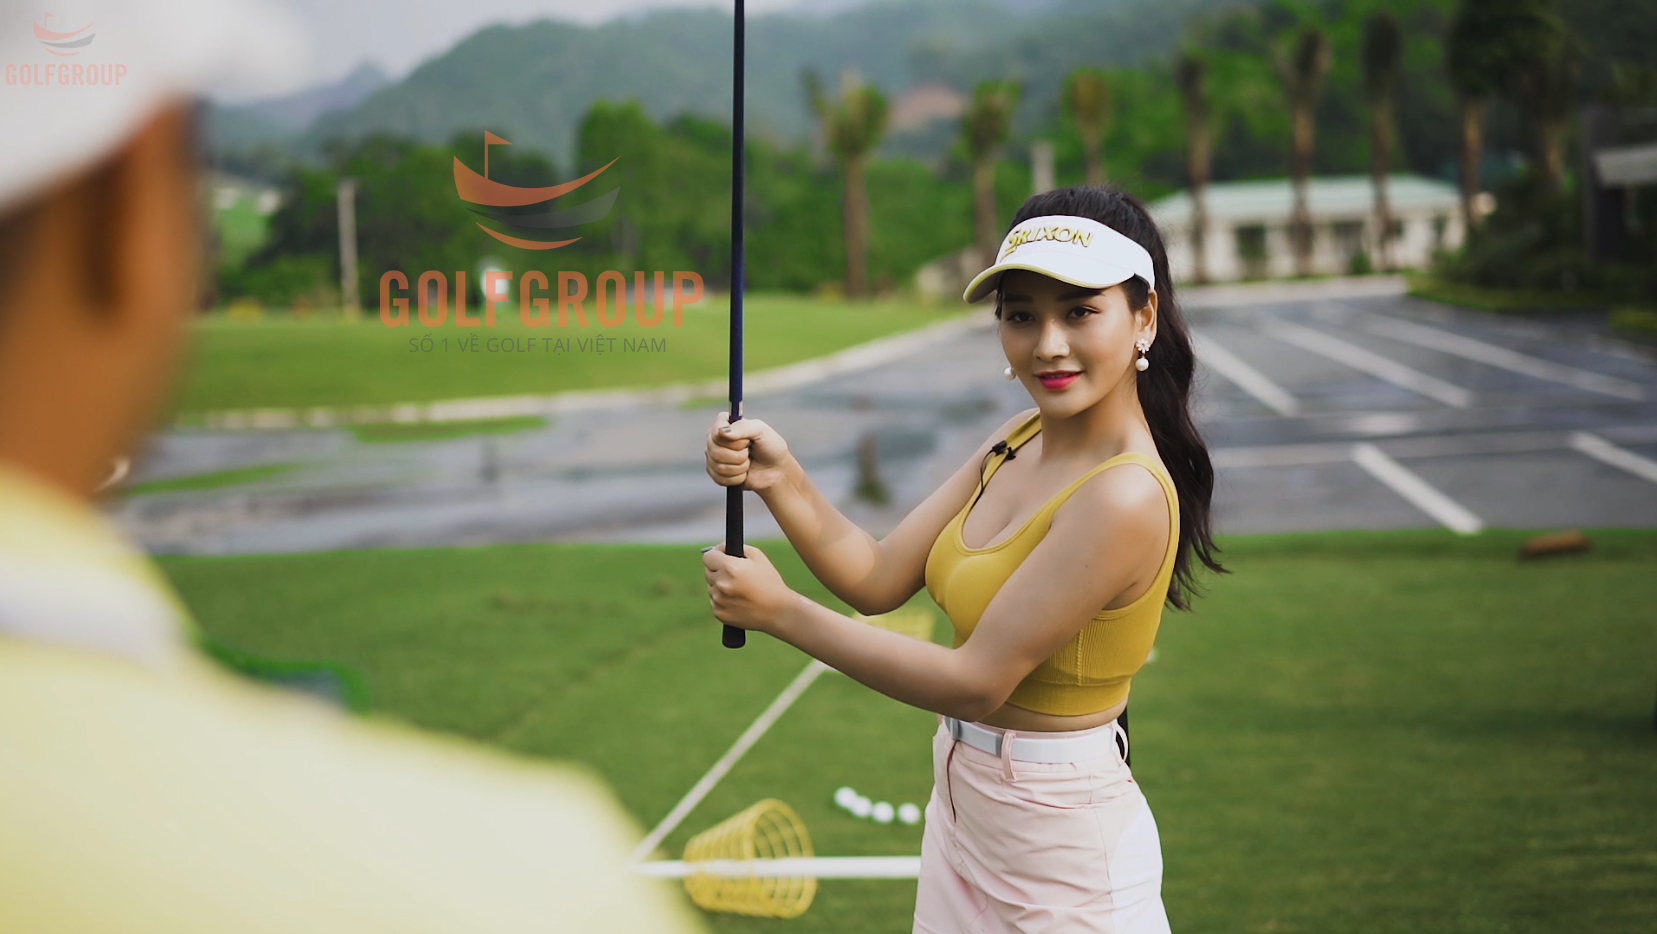 Chính Thức Vén Màn Bí Ẩn “Thư Ký Học Golf” - Tạp Chí Golf Times